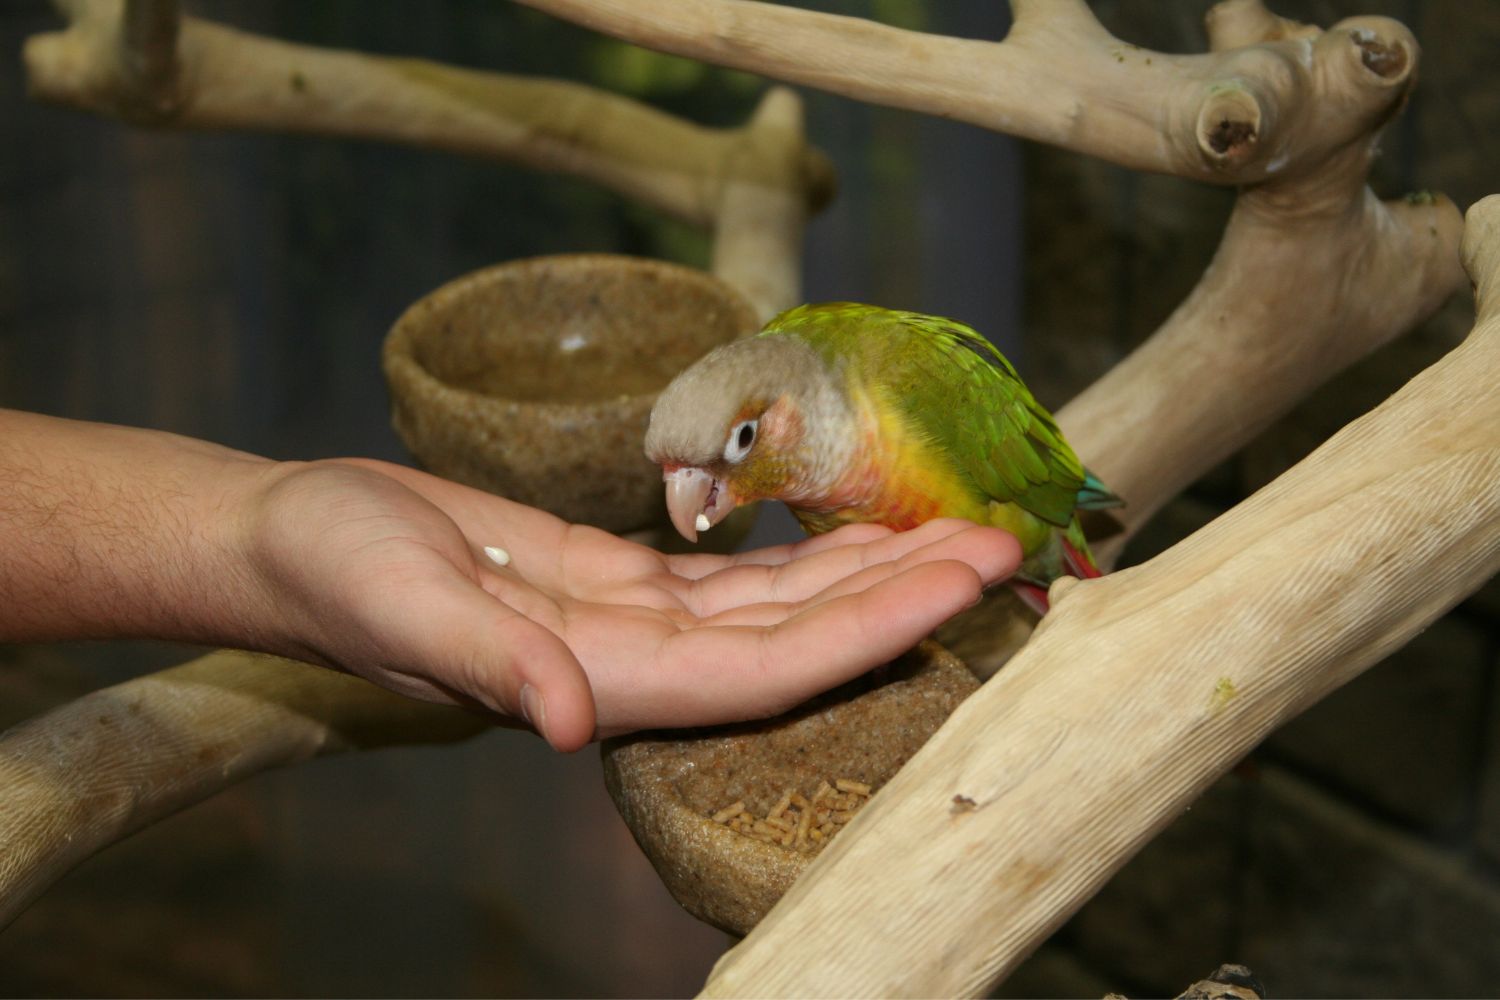 a bird on a hand